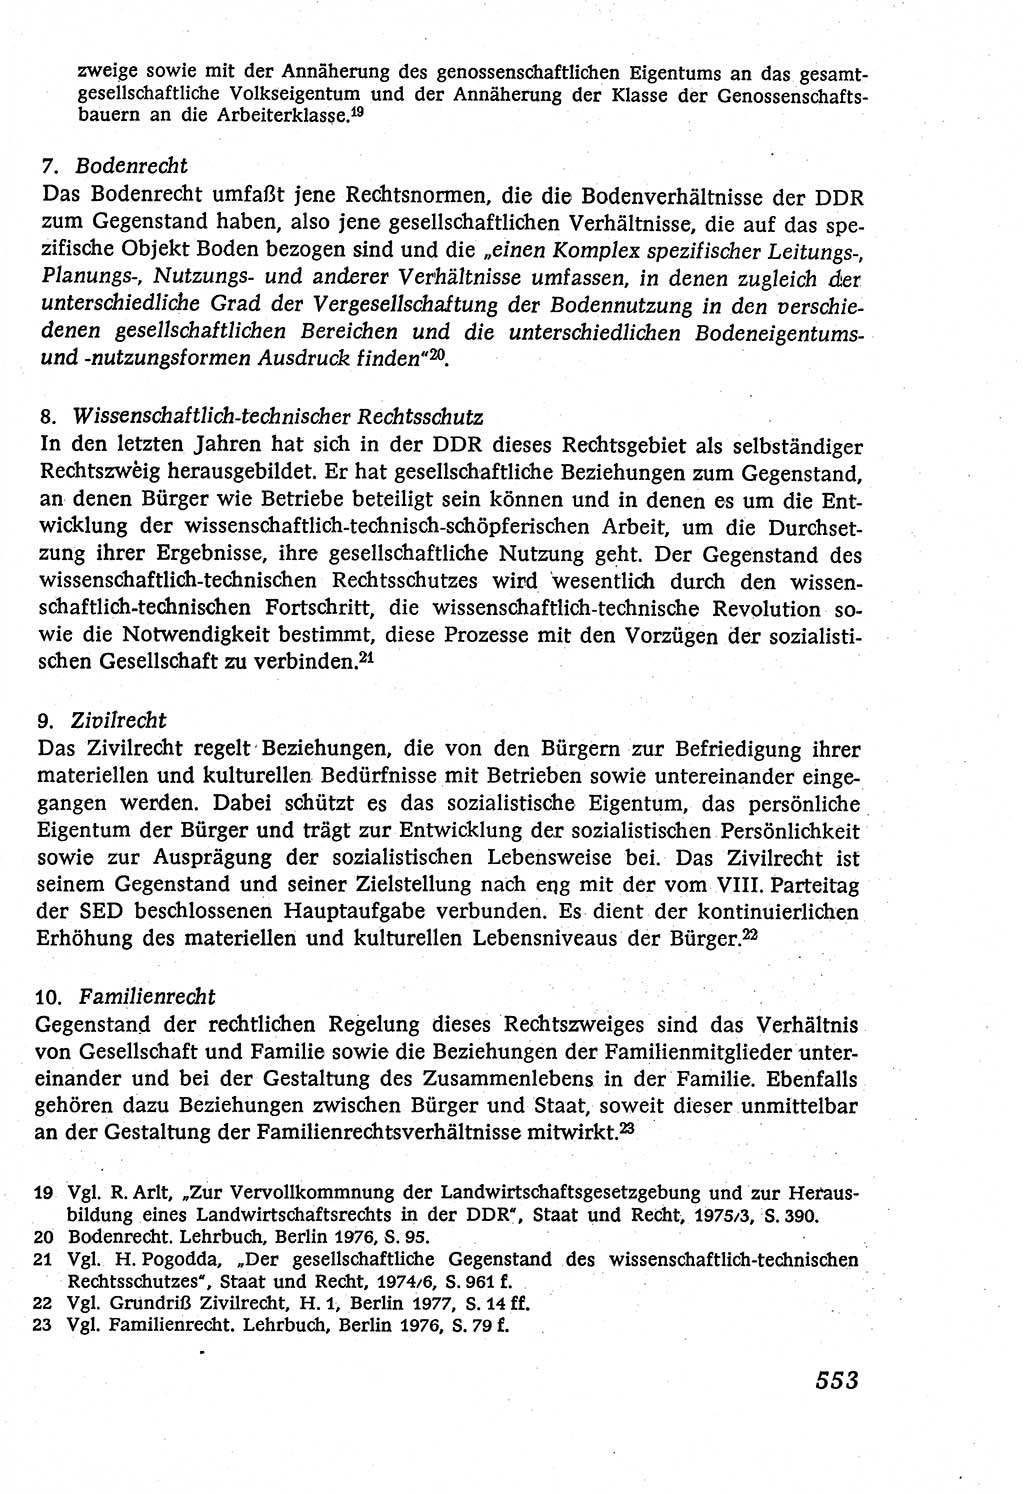 Marxistisch-leninistische (ML) Staats- und Rechtstheorie [Deutsche Demokratische Republik (DDR)], Lehrbuch 1980, Seite 553 (ML St.-R.-Th. DDR Lb. 1980, S. 553)